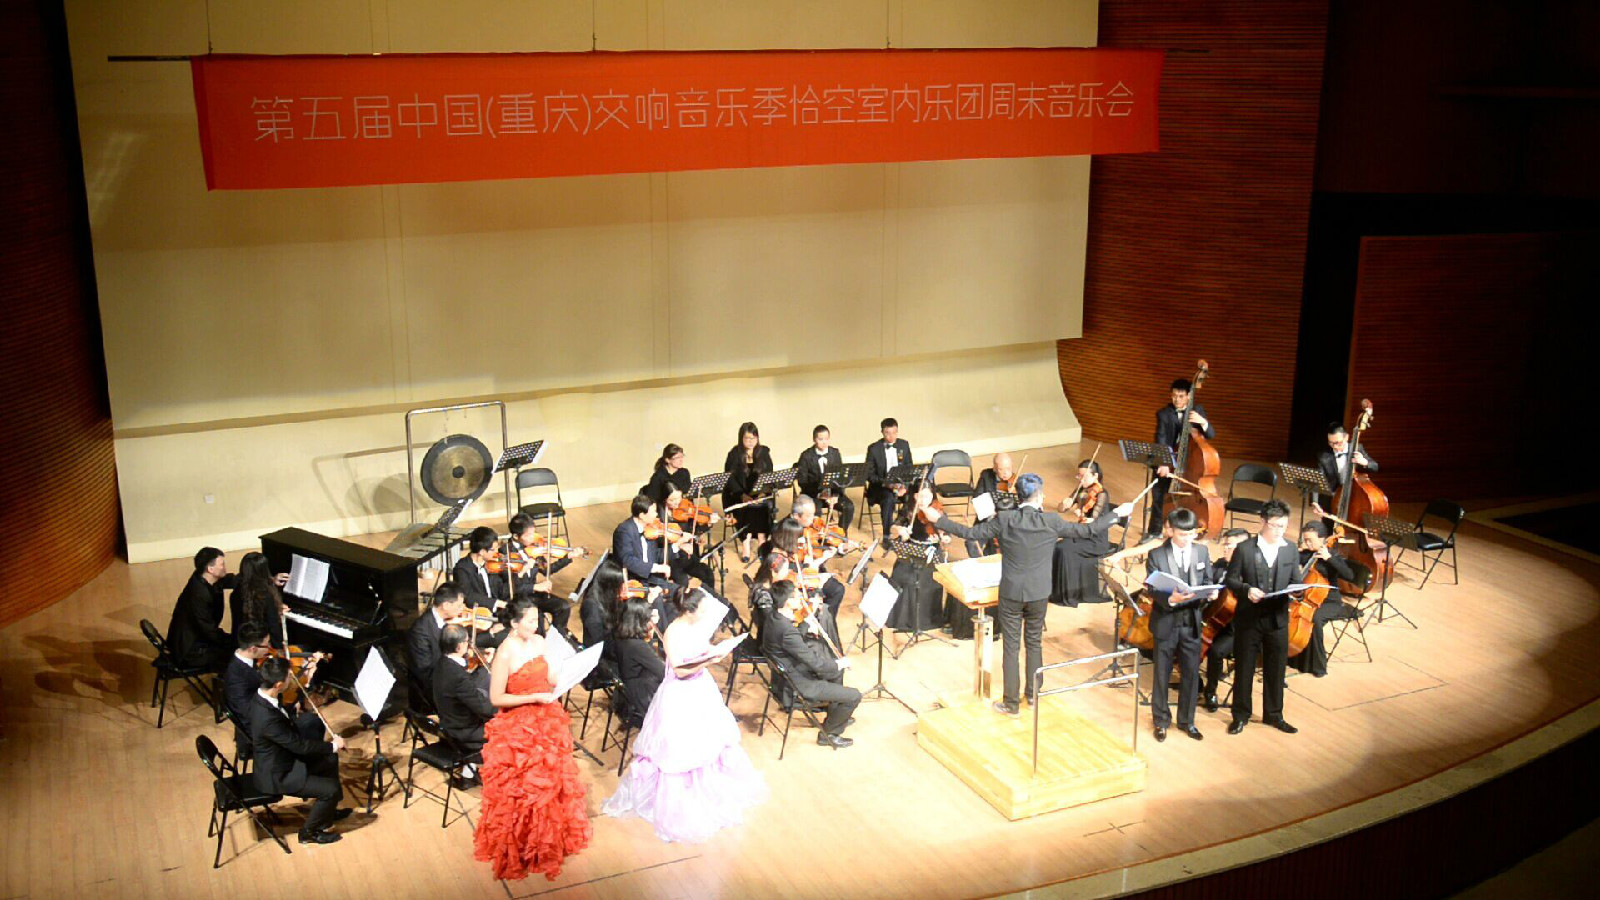 重慶恰空室內交響樂團